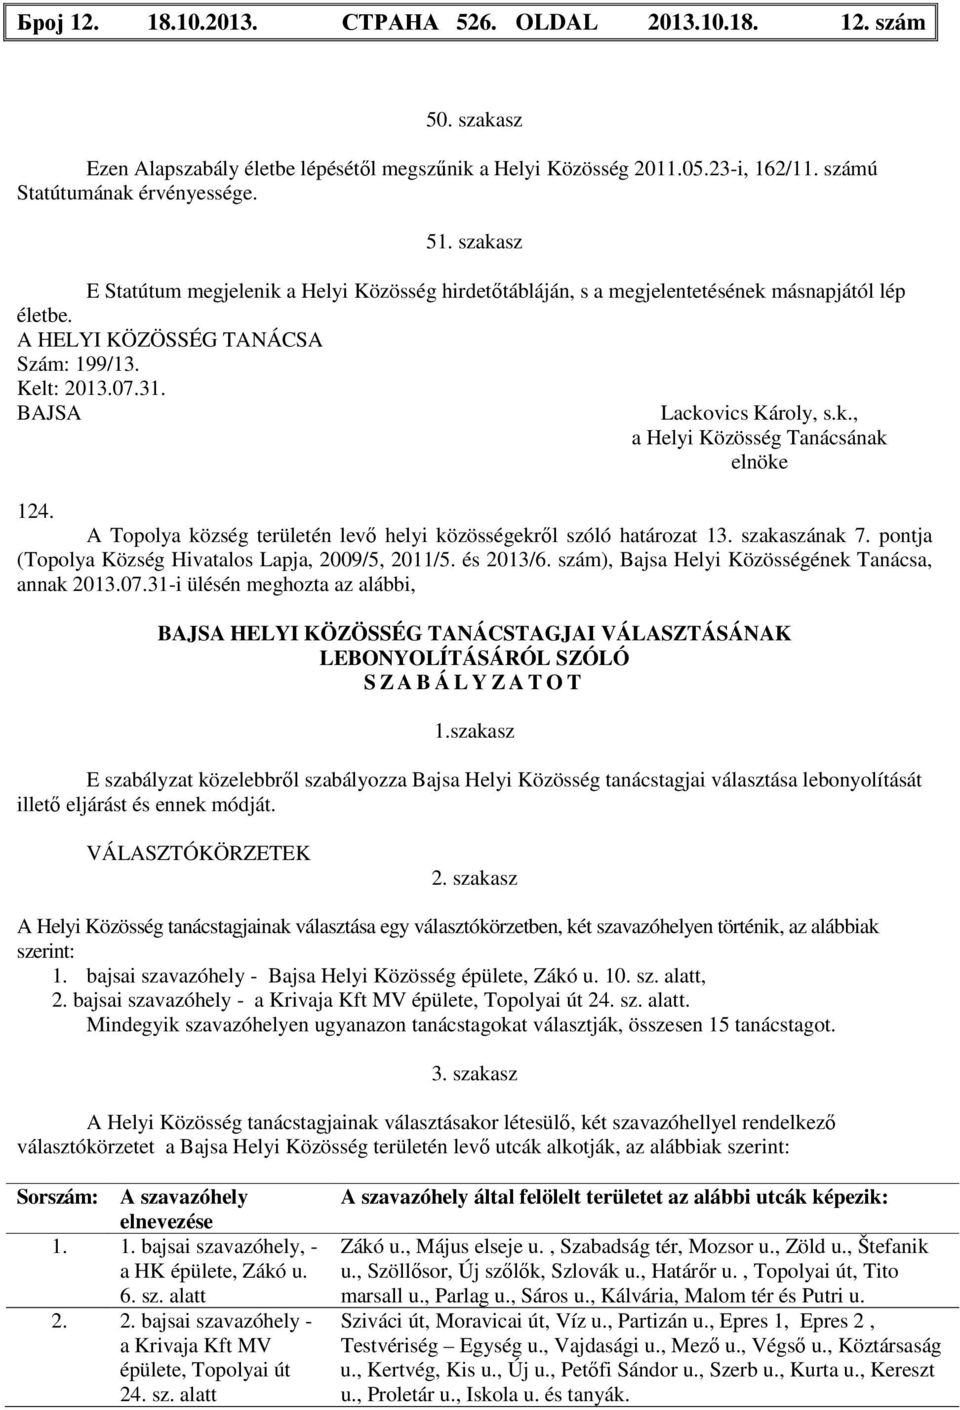 A Topolya község területén levő helyi közösségekről szóló határozat 13. szakaszának 7. pontja (Topolya Község Hivatalos Lapja, 2009/5, 2011/5. és 2013/6.